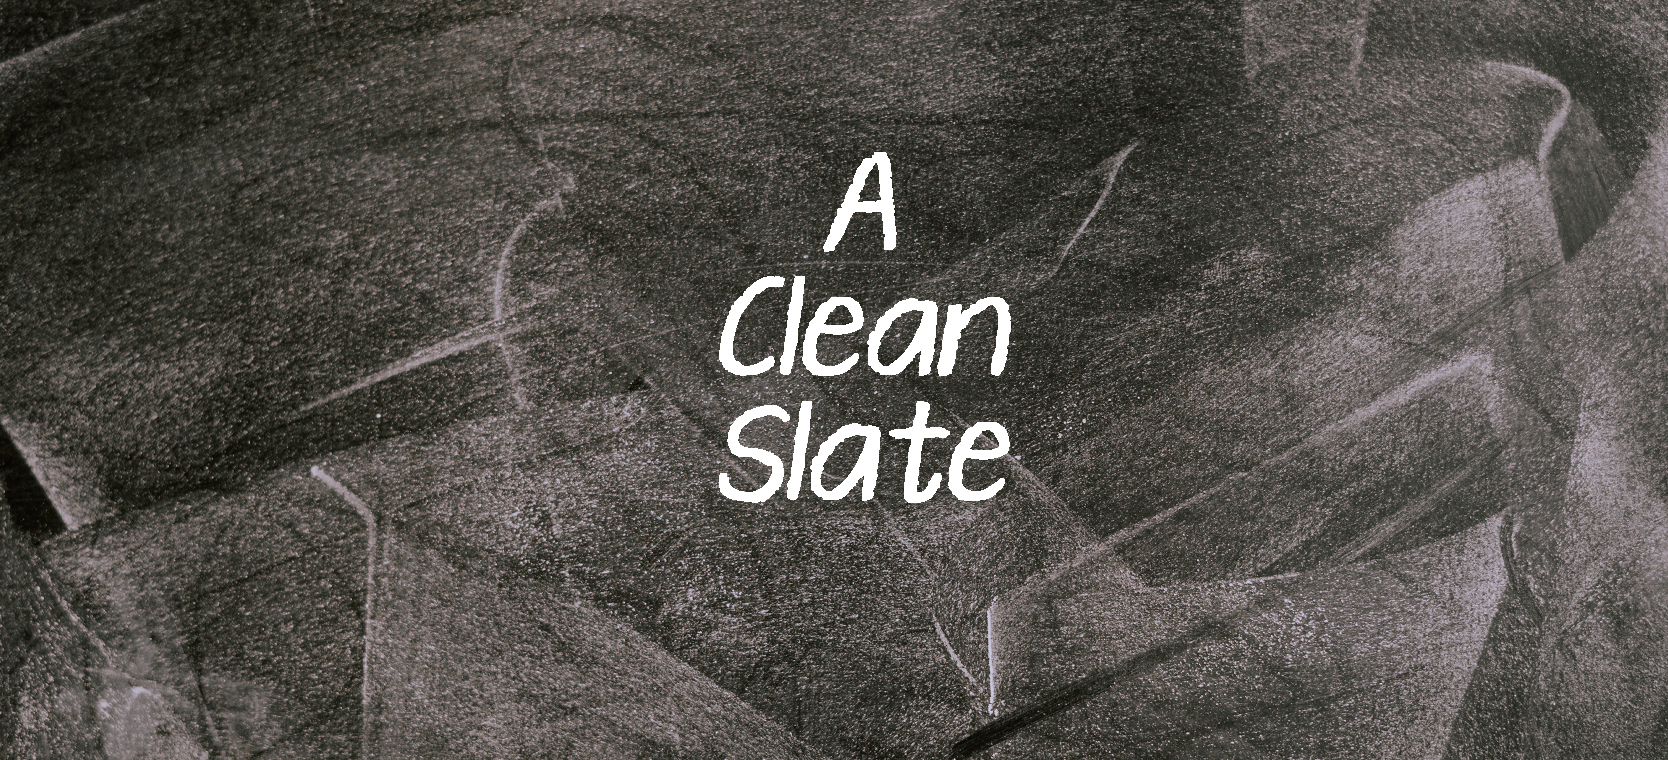 "A Clean Slate" on a chalk board